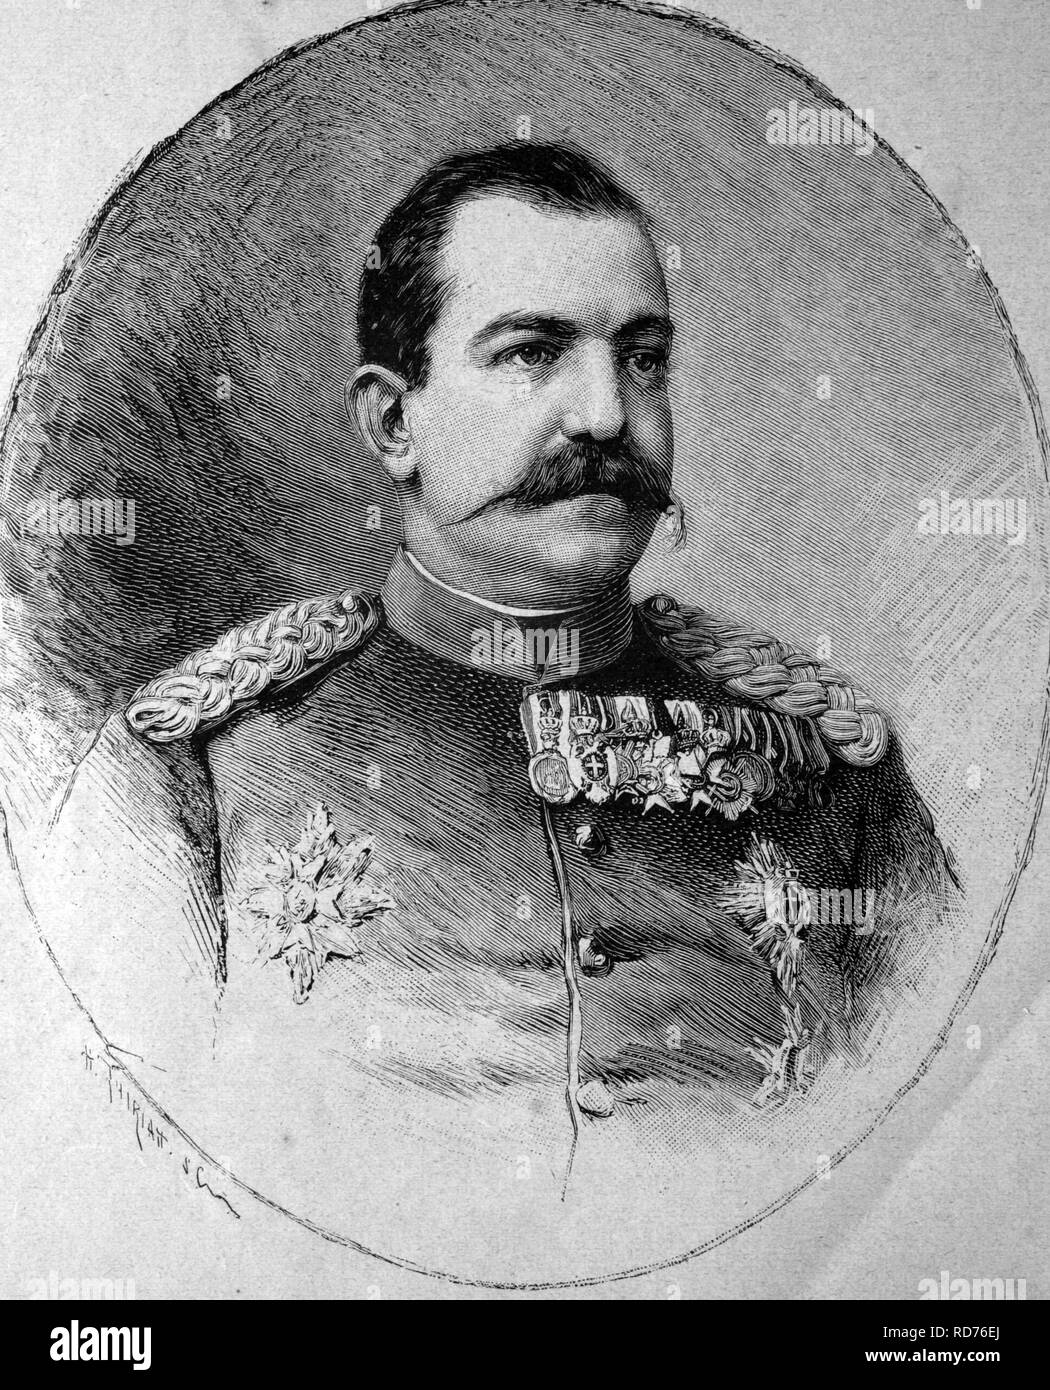 Milan I (1854-1901), Rey de Serbia, ilustración histórica, circa 1886 Foto de stock